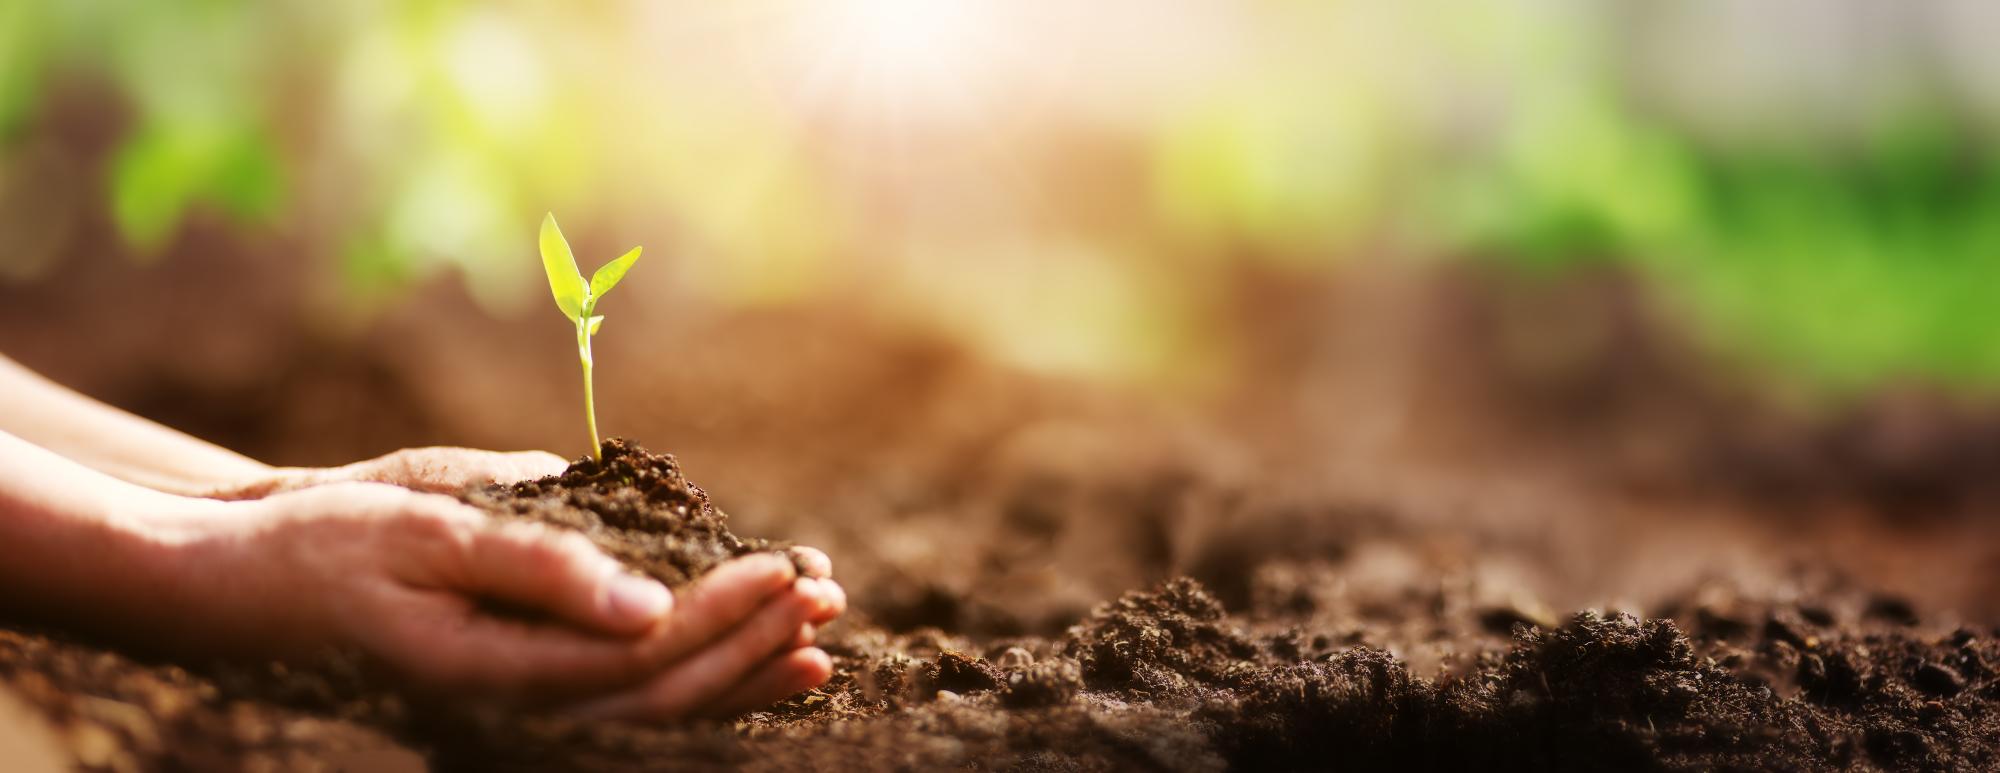 Hands holding seedling in soil